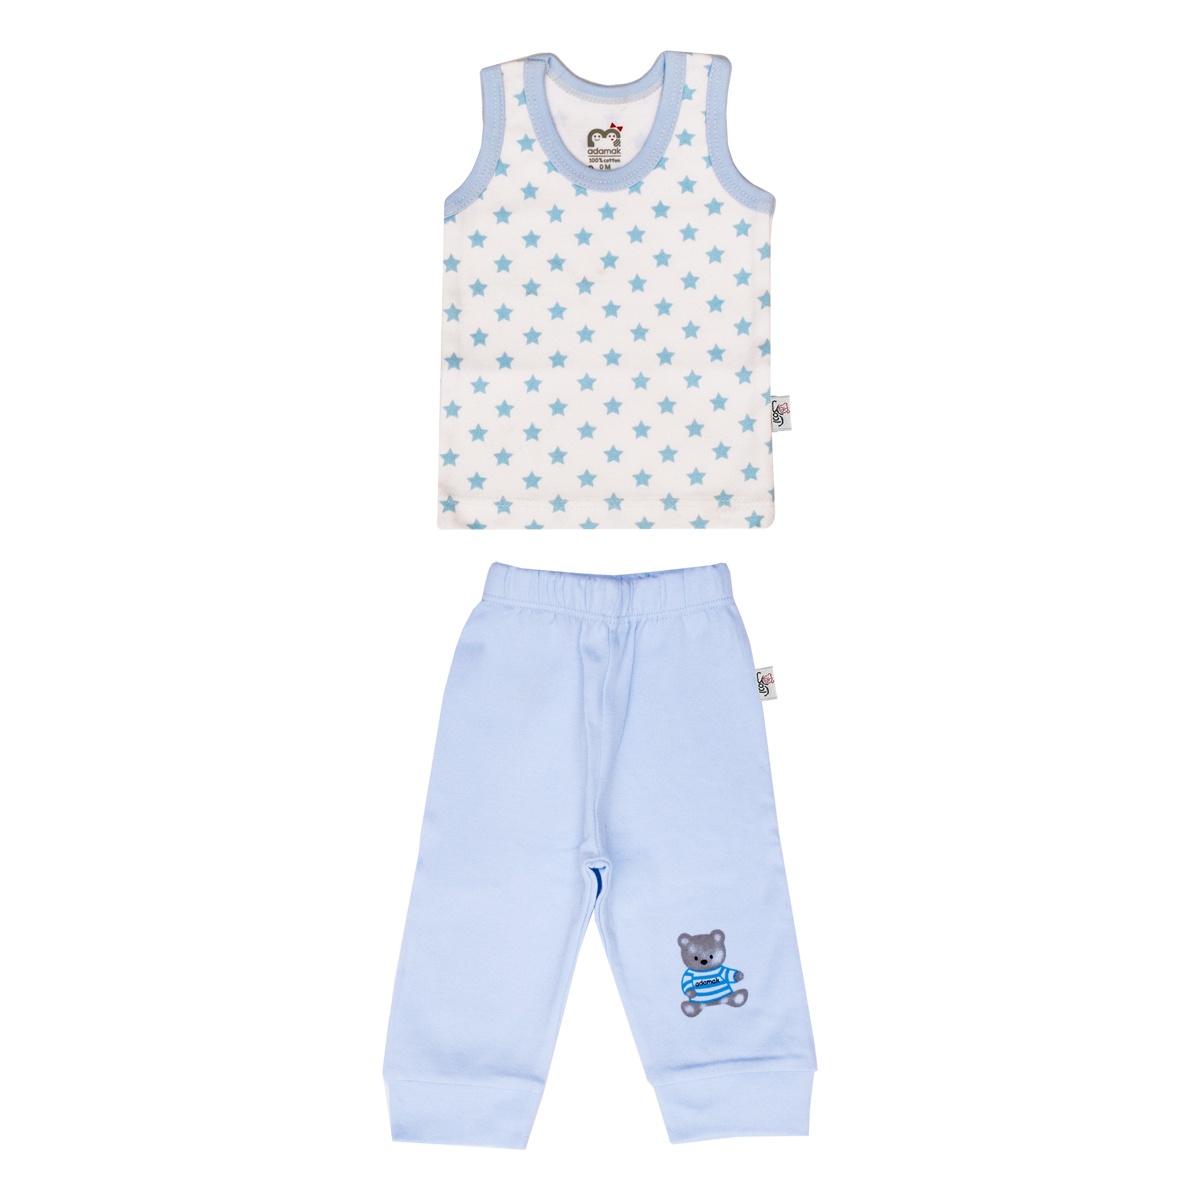 ست تاپ و شلوار نوزادی پسرانه آدمک طرح ستاره آبی کد 02 -  - 1